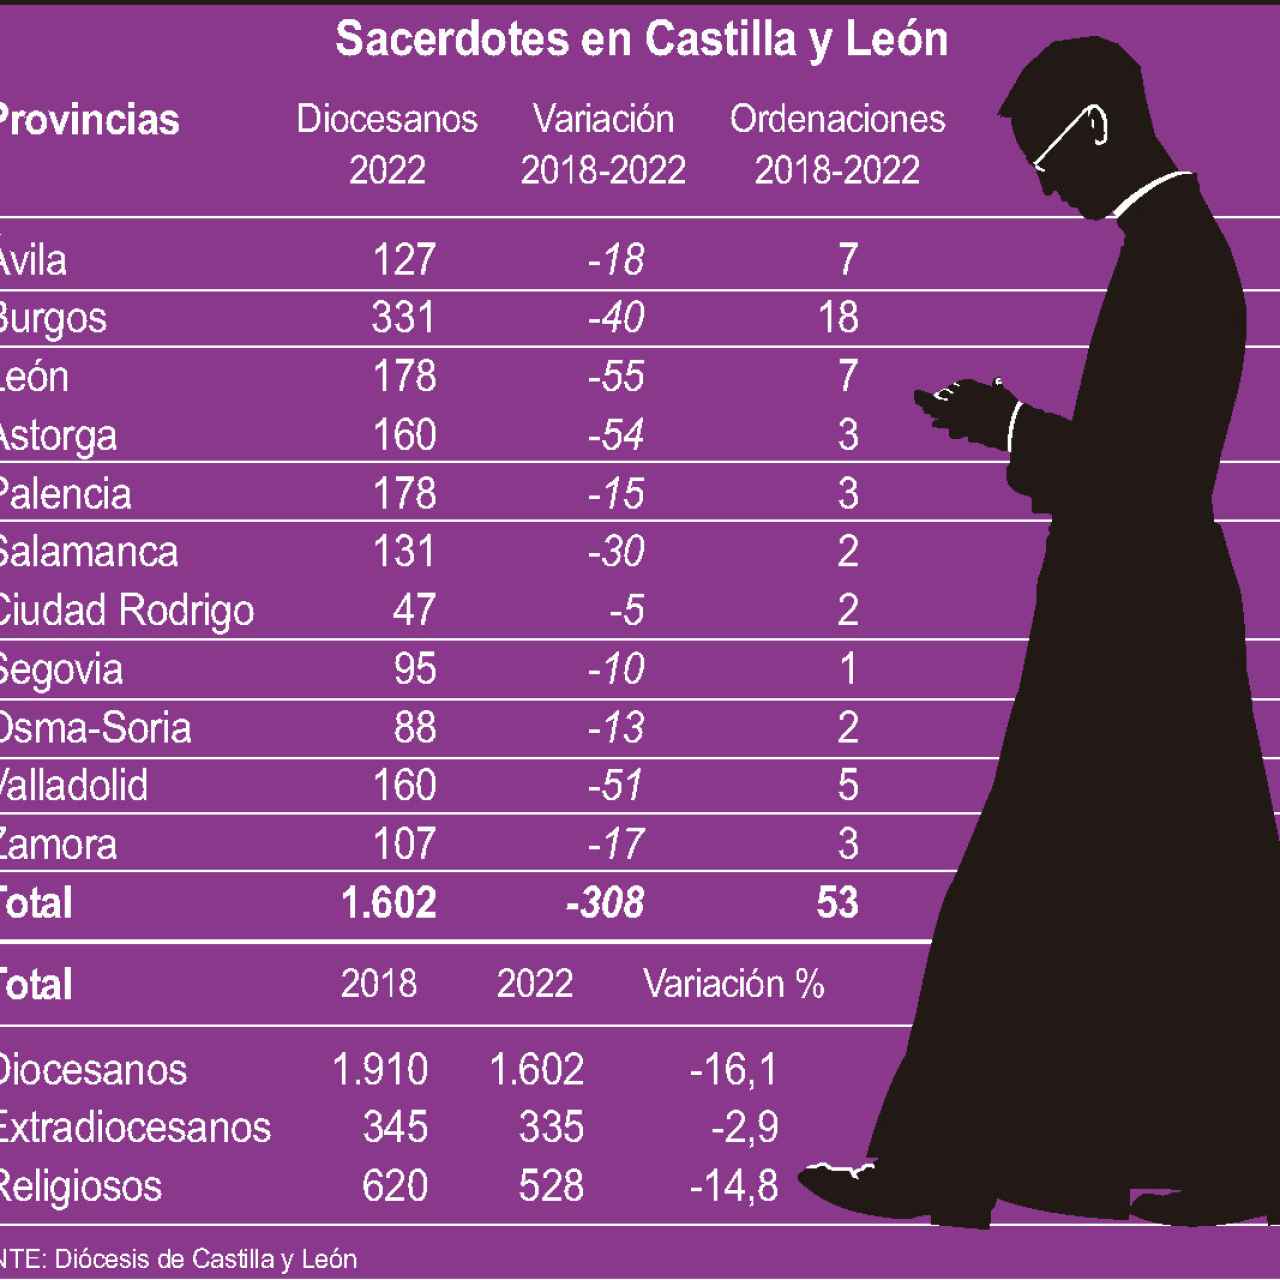 Sacerdotes en Castilla y León